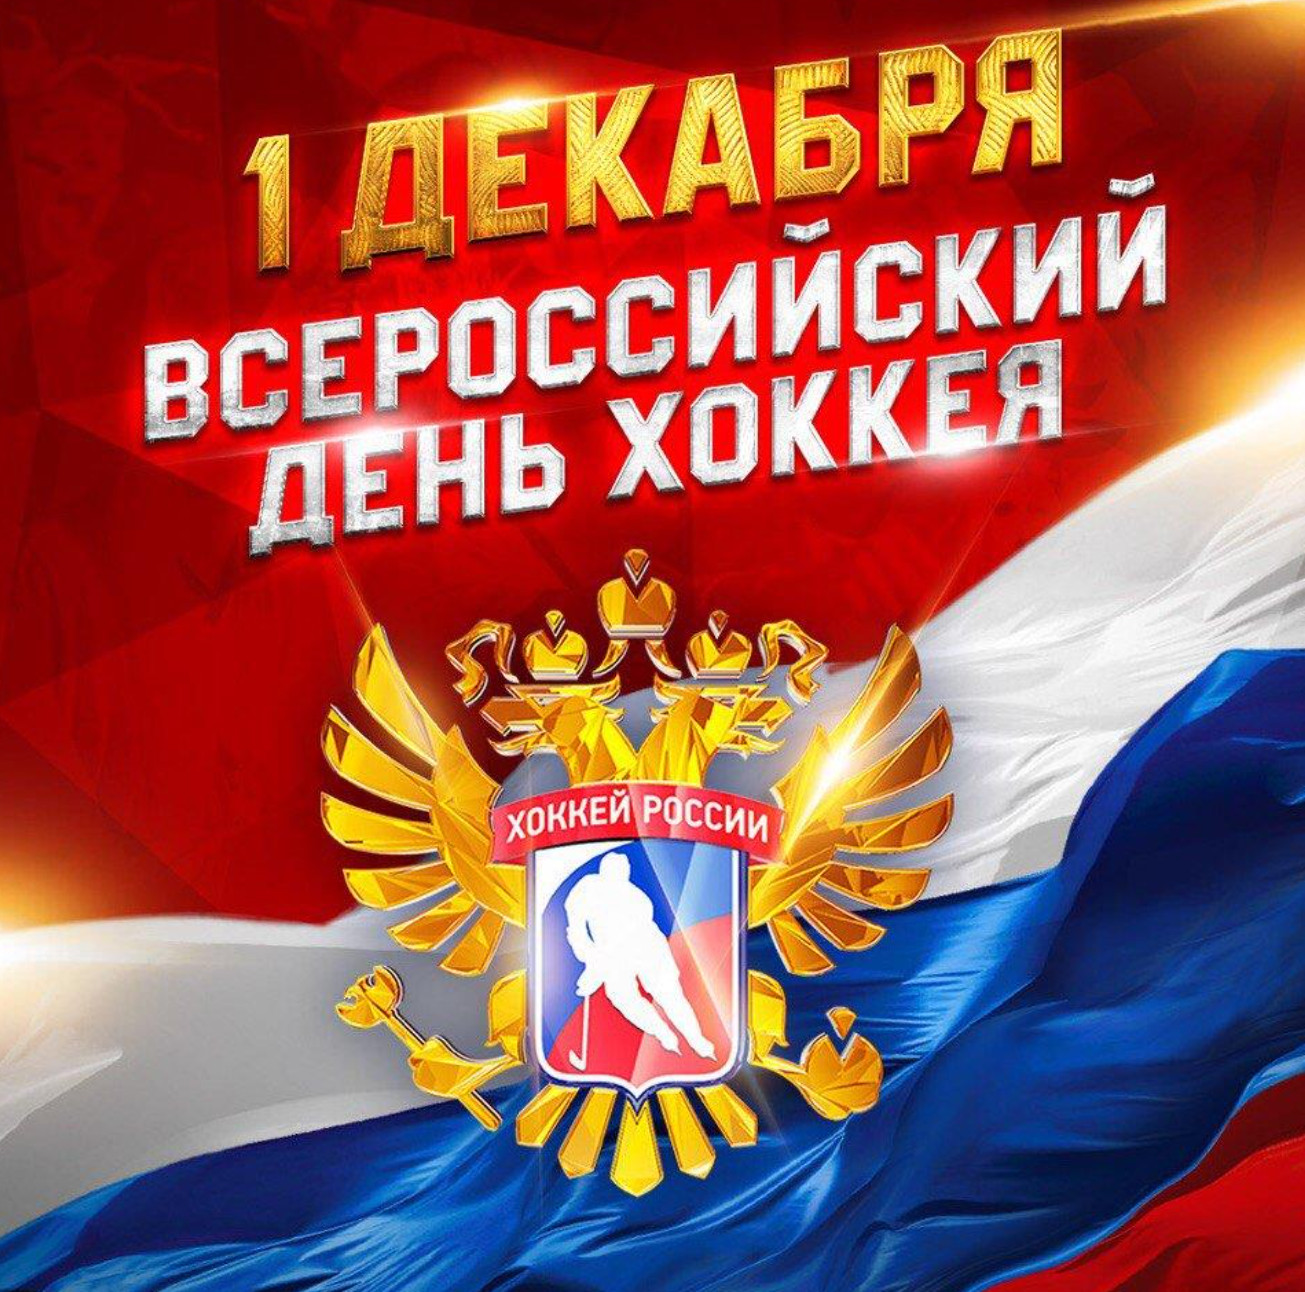 Поздравляем со Всероссийским днём хоккея!.